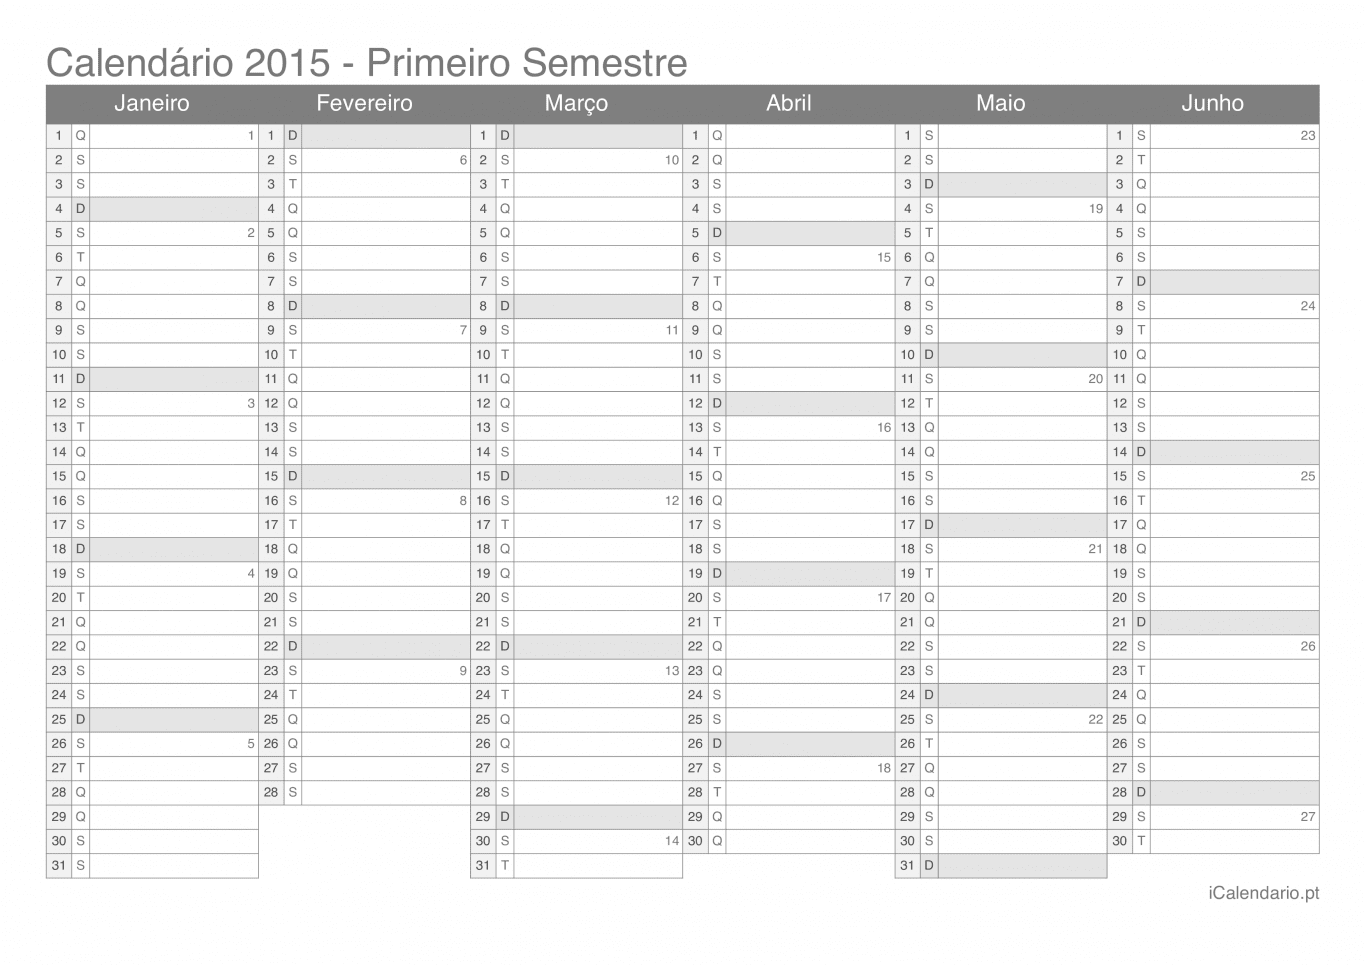 Calendário por semestre com números da semana 2015